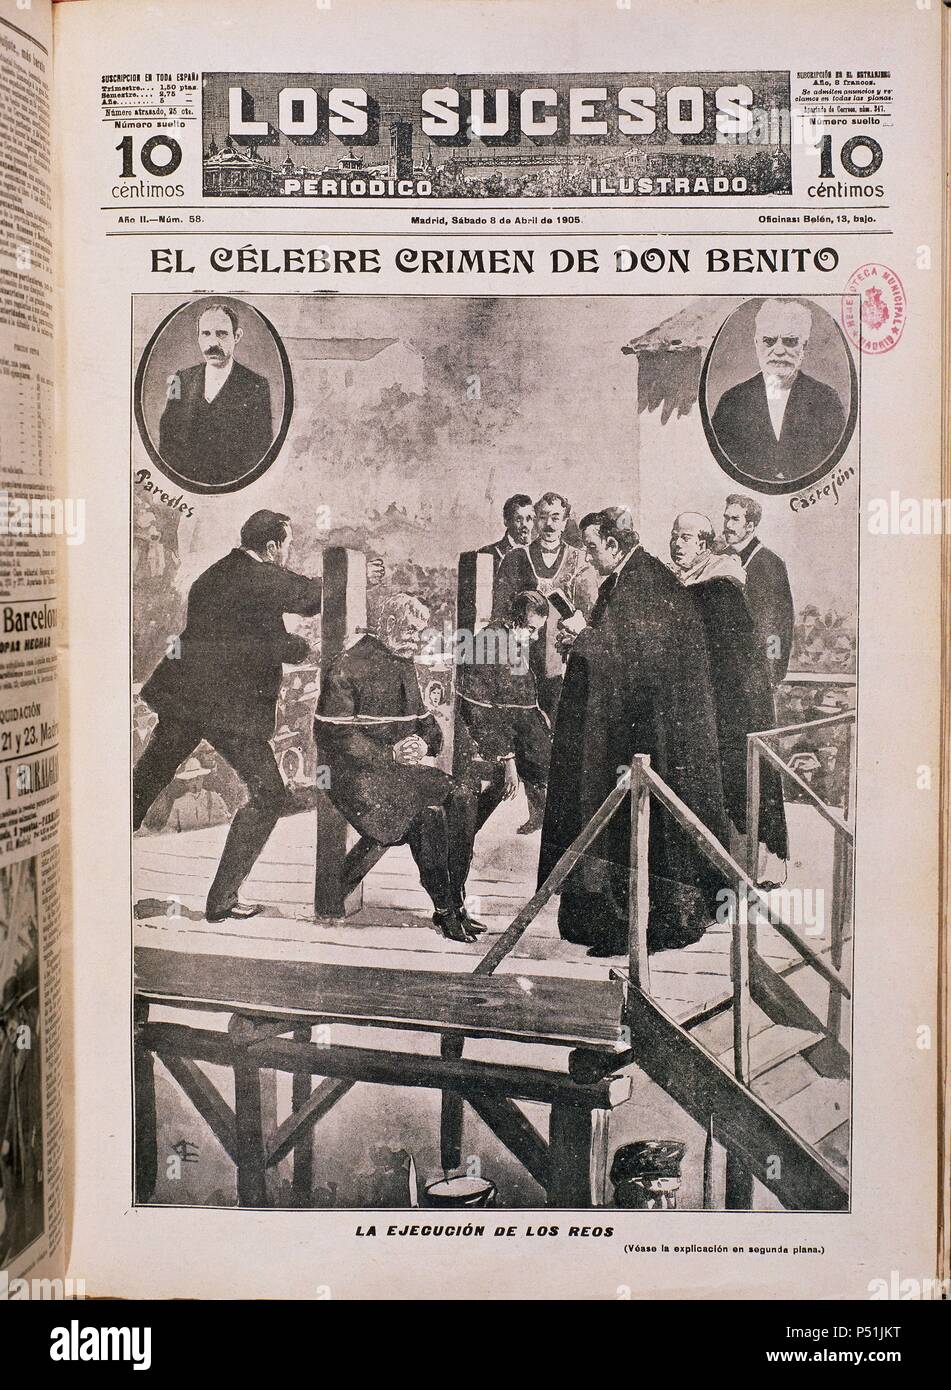 CONVICTOS POR EL CRIMEN DE DON BENITO SON EJECUTADOS EN 1902 - LOS SUCESOS - Nº 58. Location: HEMEROTECA MUNICIPAL, MADRID, SPAIN. Stock Photo